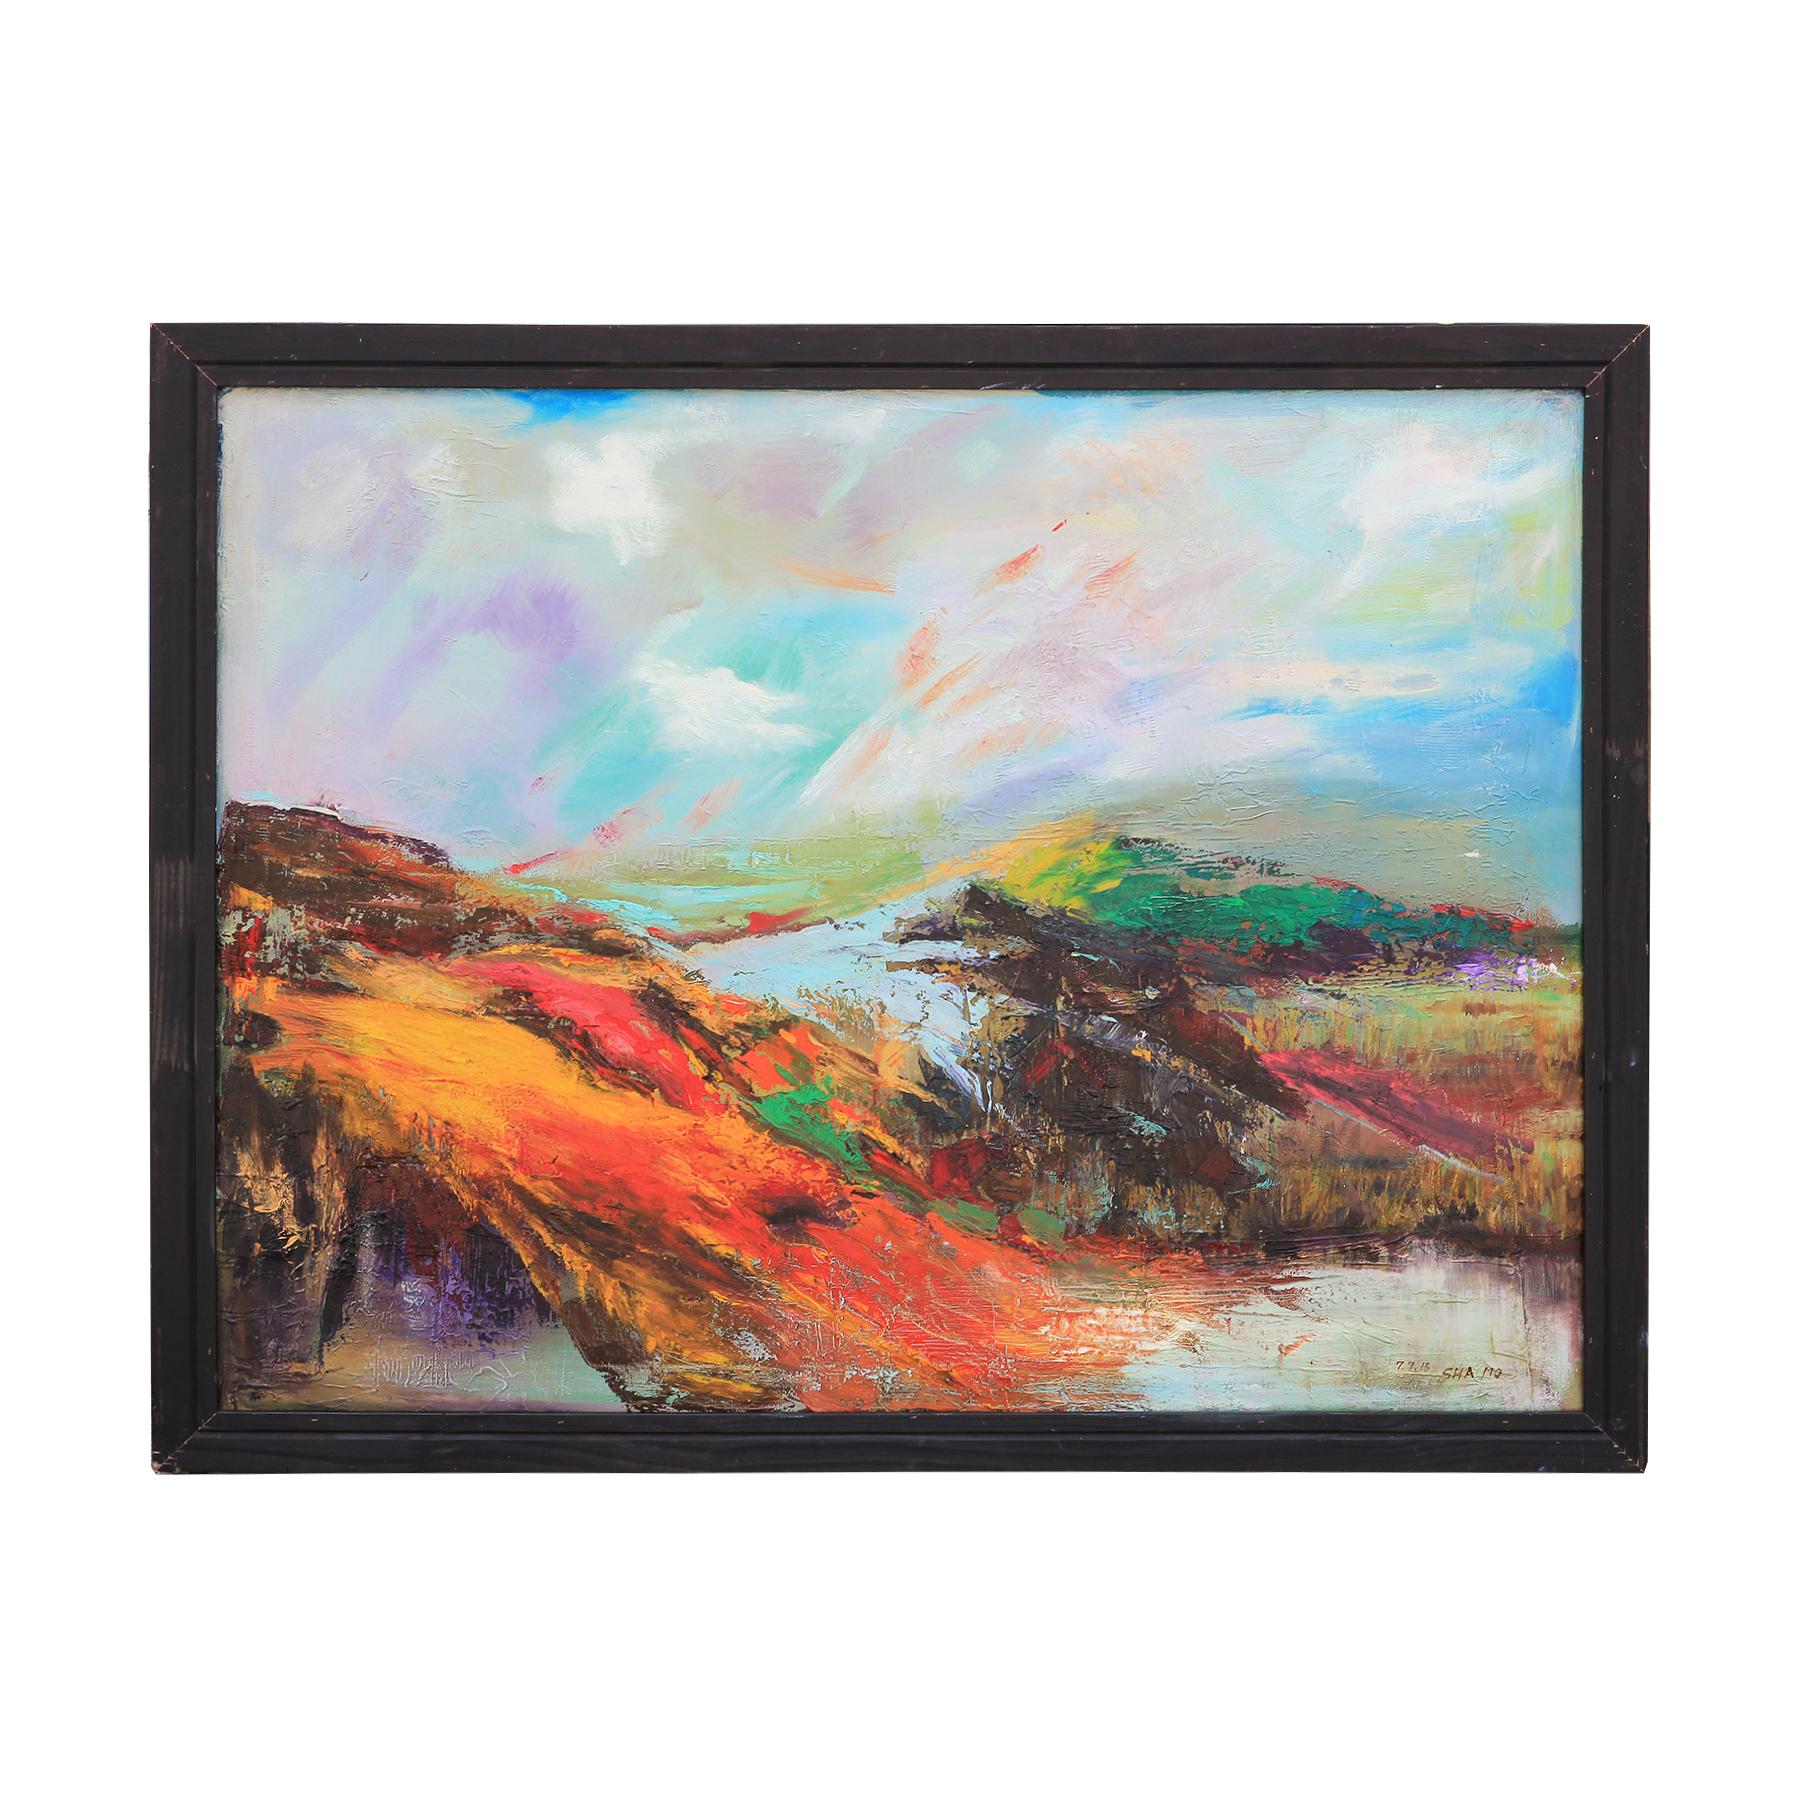 Peinture impressionniste abstraite de paysage de montagne et de lac aux tons orange et bleu